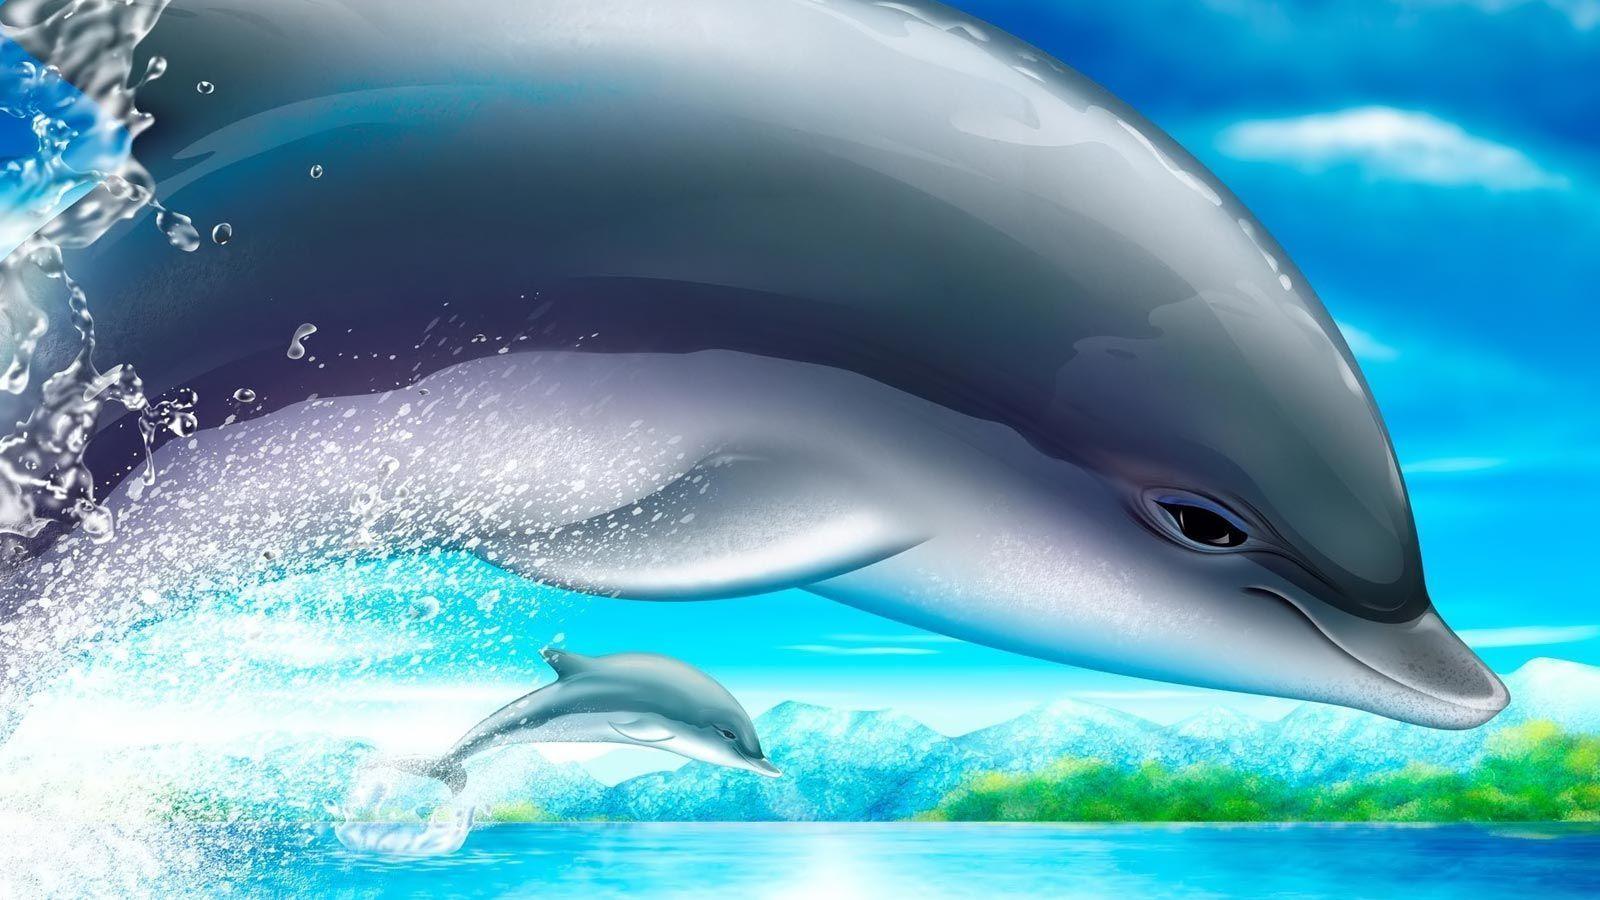 Desktop Wallpaper · Gallery · HD Notebook · Art dolphins netbook